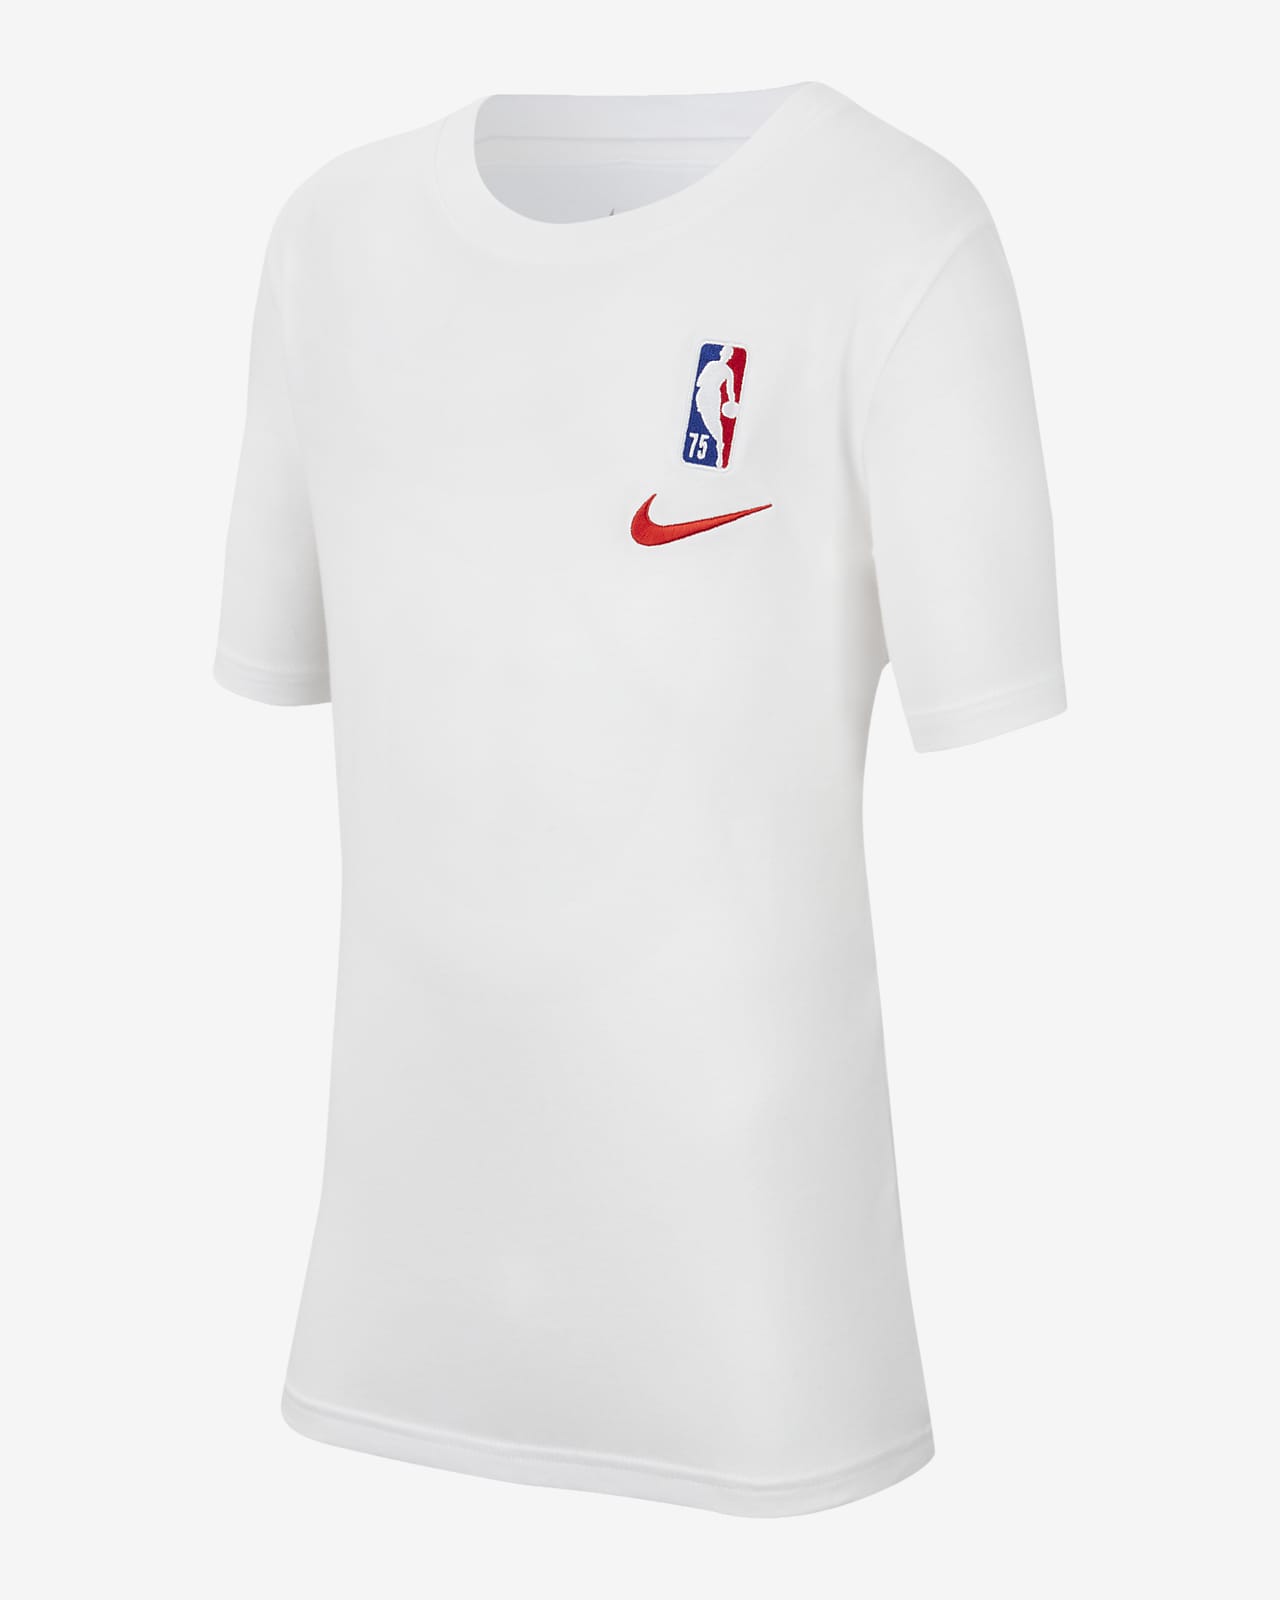 Team 31 Nike NBA-shirt voor kids